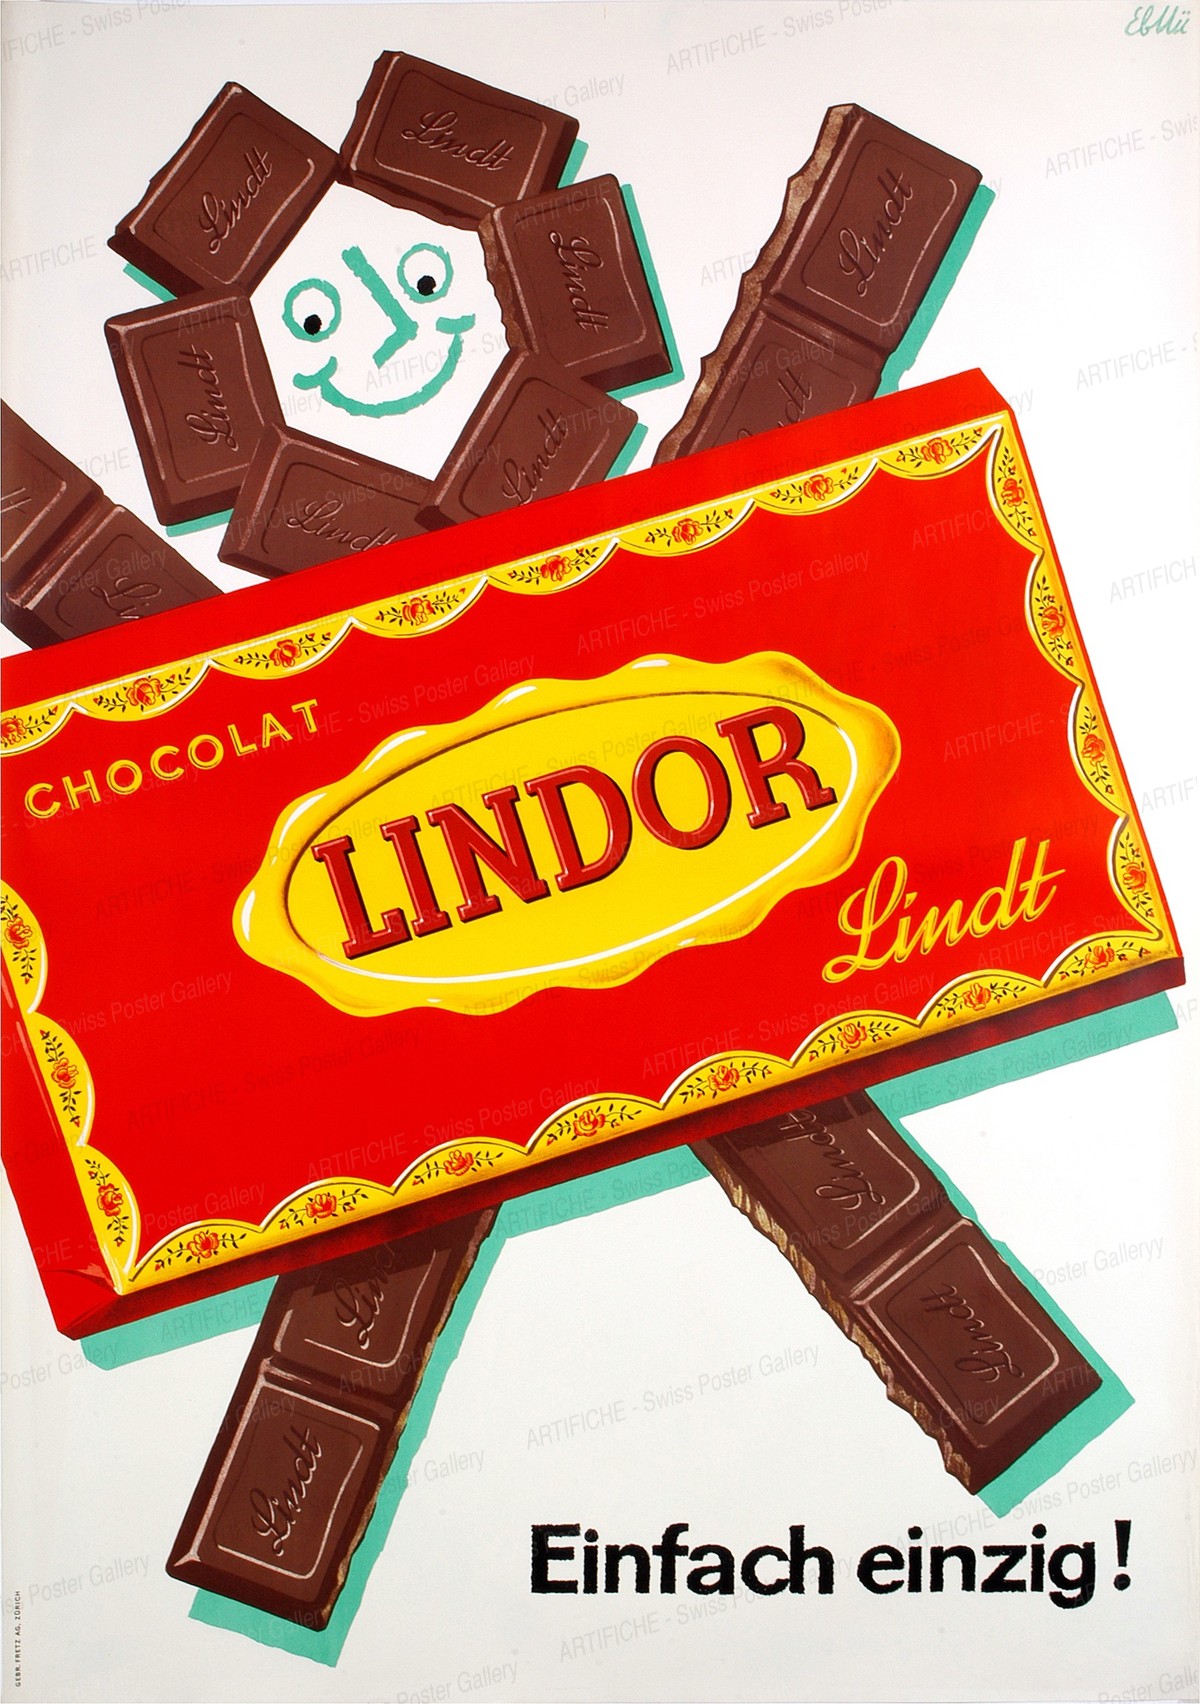 Lindor – Chocolat – Lindt – Einfach einzig!, Emil Ebner